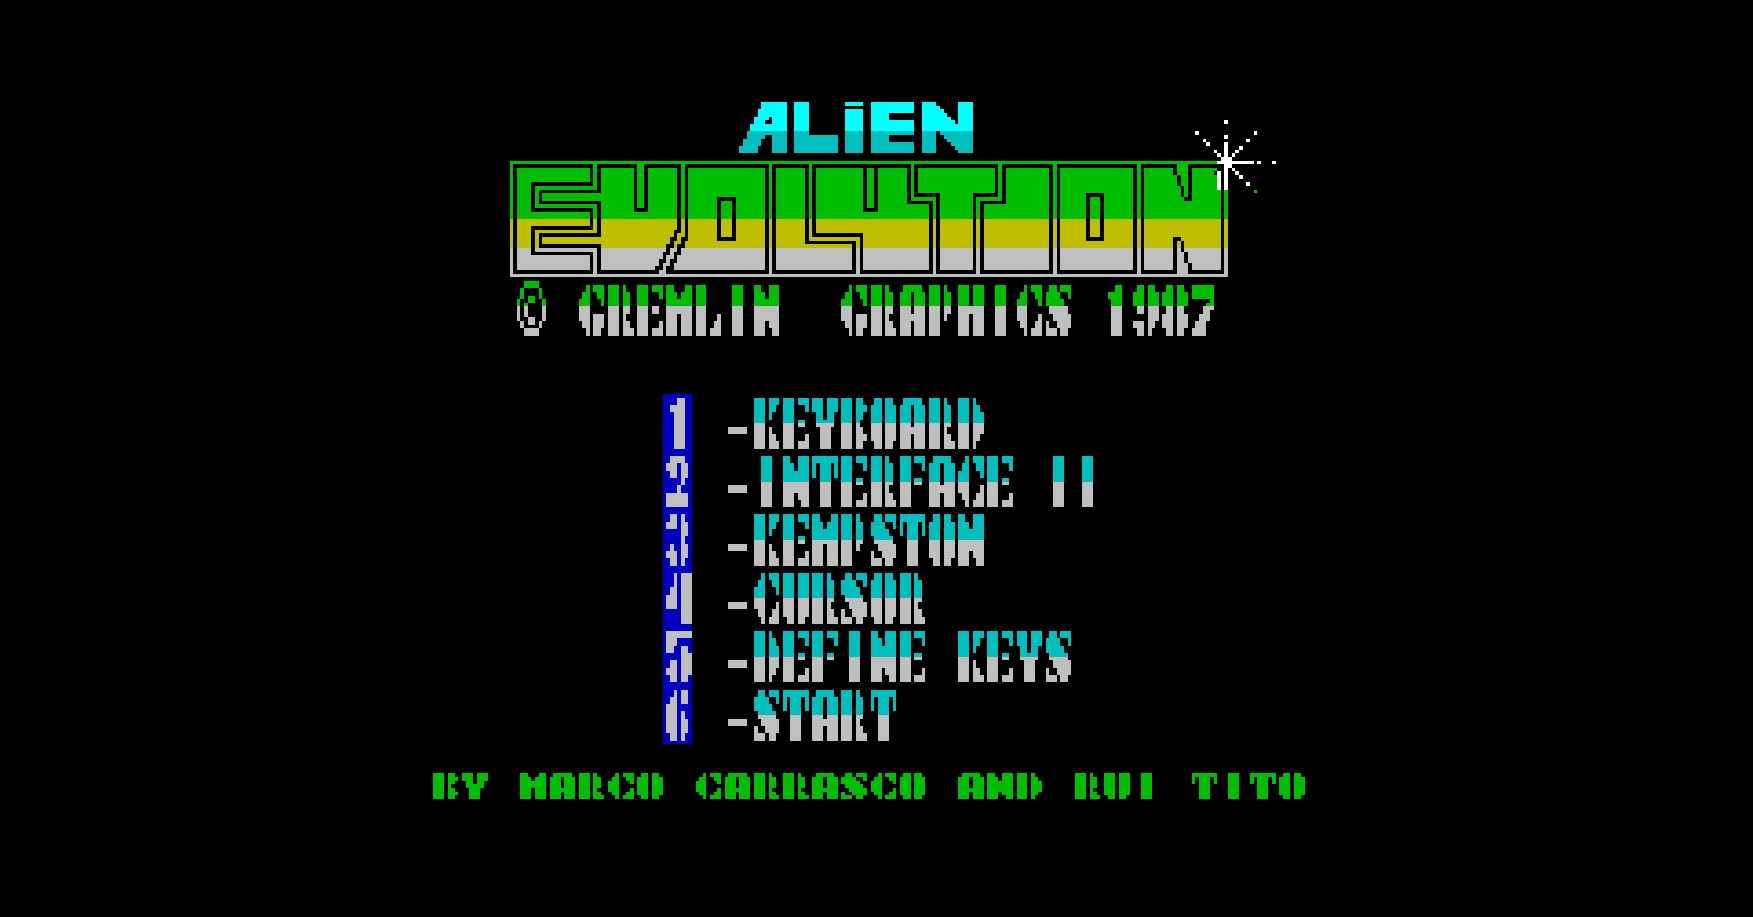 Videojogo português Alien Evolution